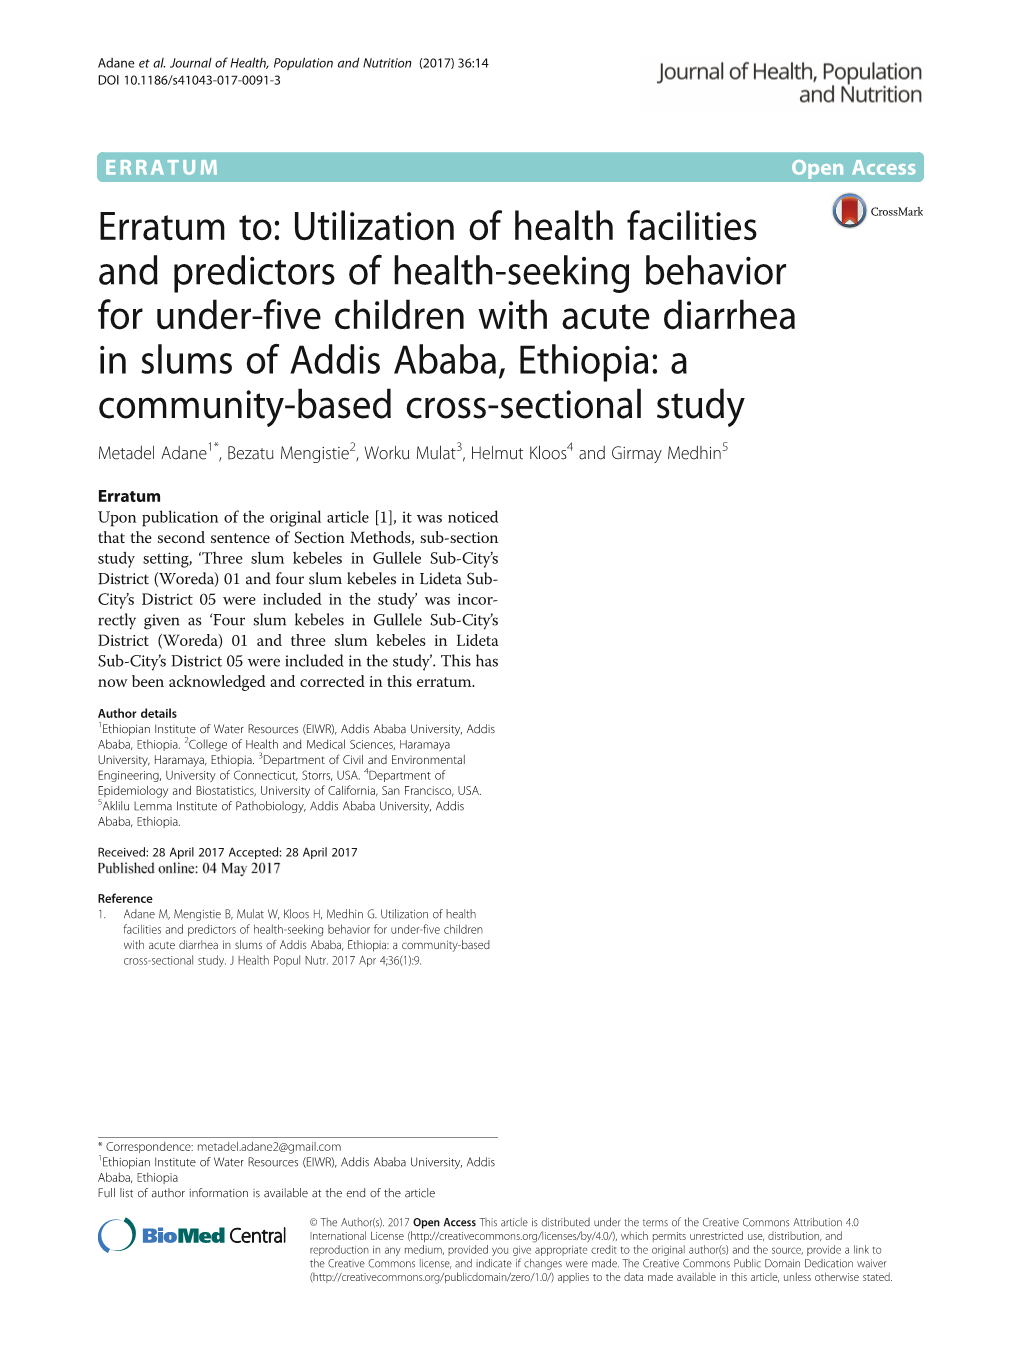 Erratum To: Utilization of Health Facilities